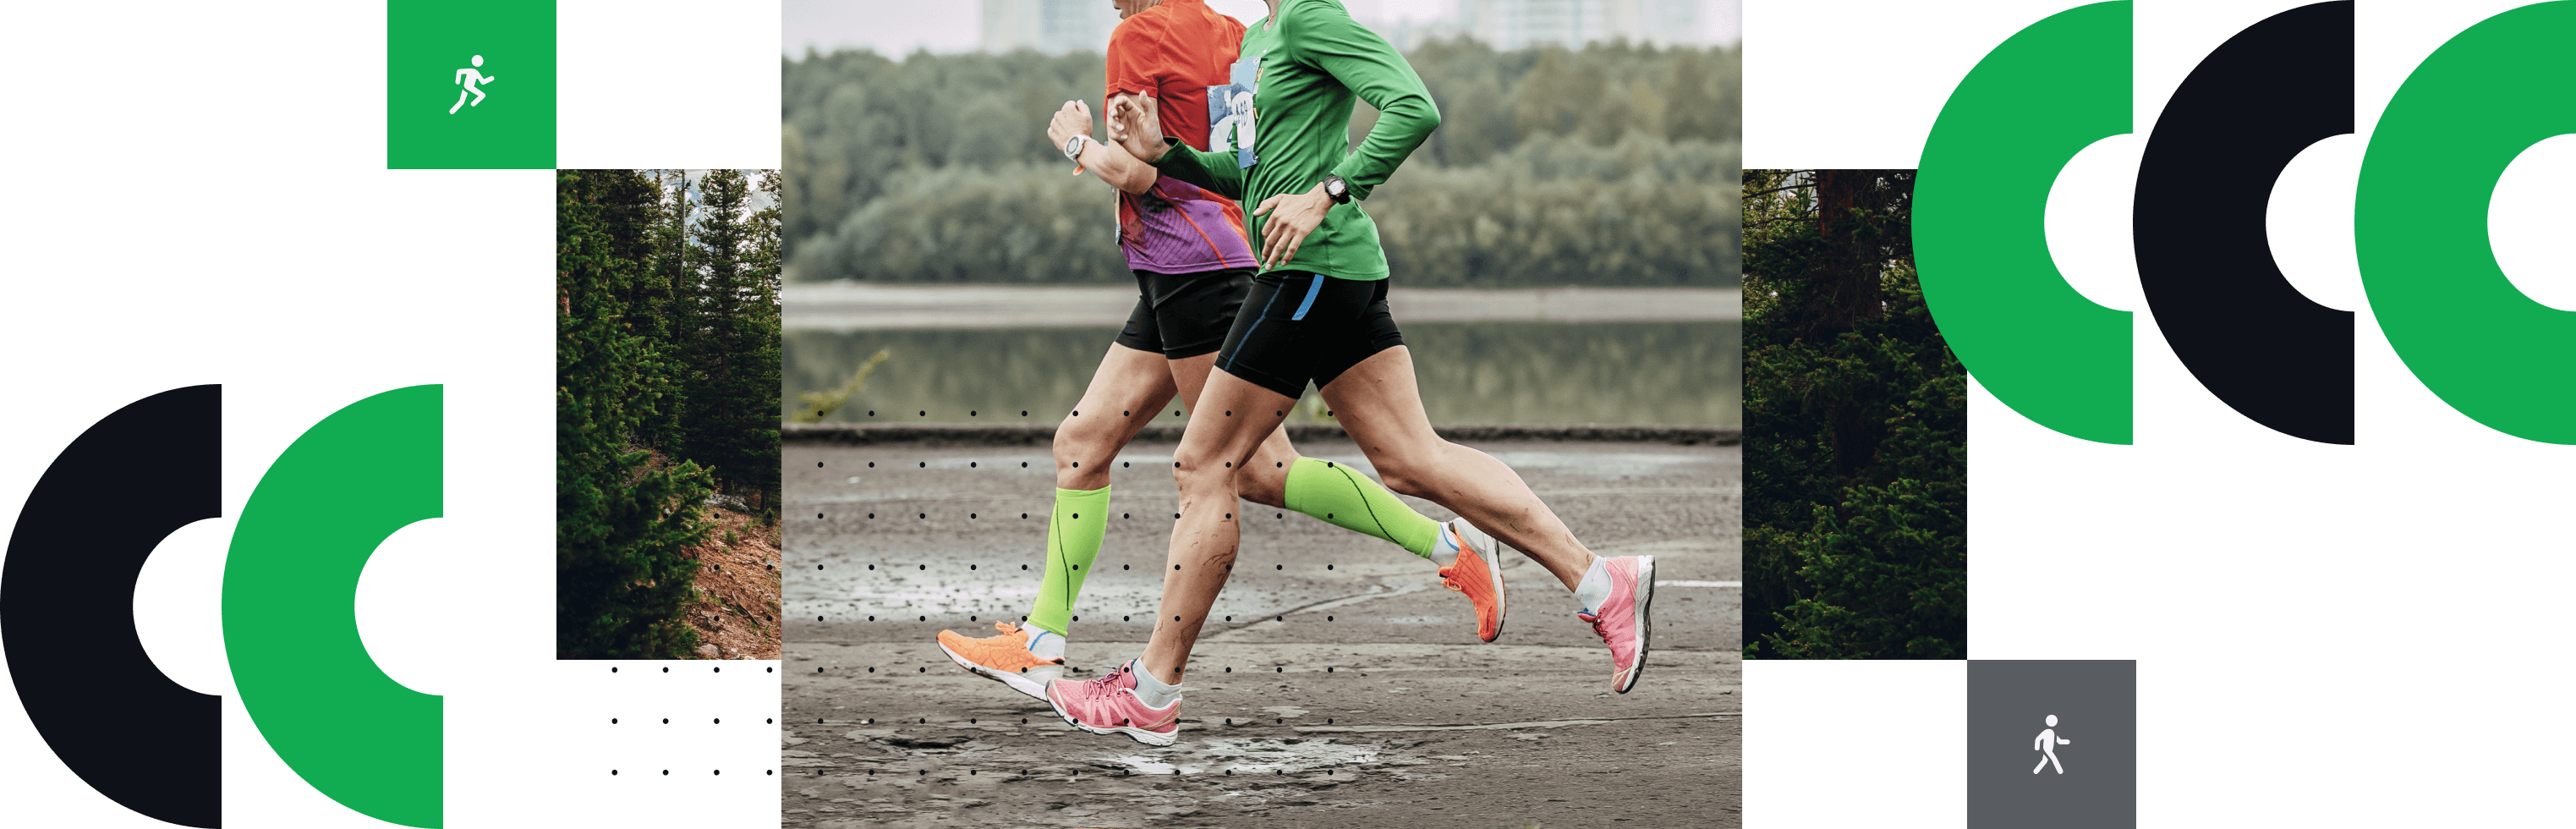 zwei menschen, die einen Marathon laufen